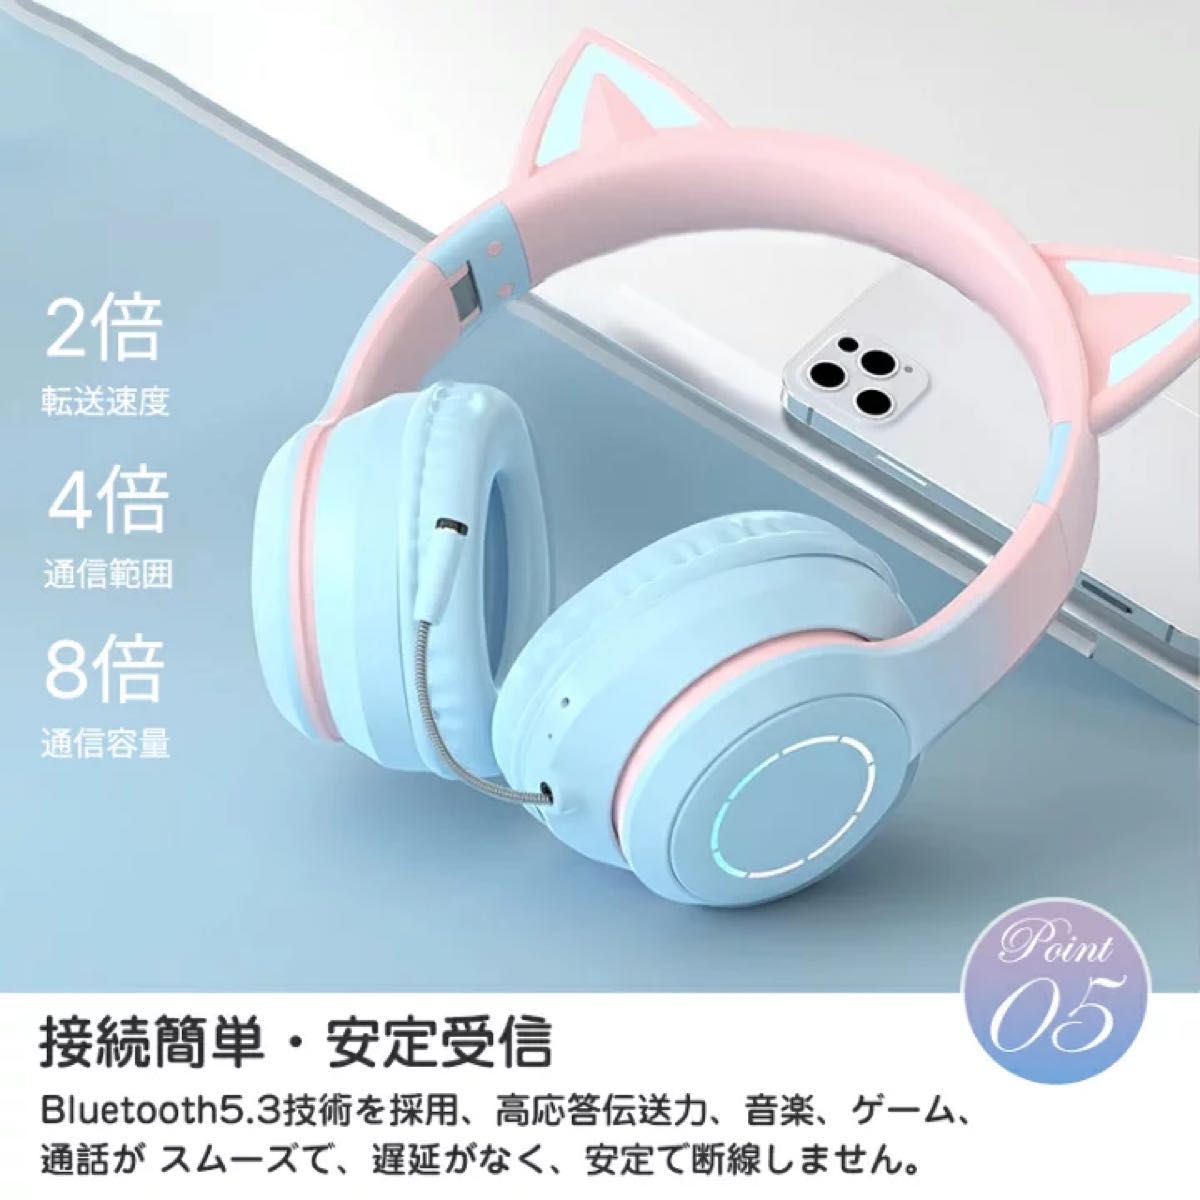 ヘッドホン 猫耳 Bluetooth マイク付き 猫耳 ワイヤレス ヘッドホン 有線&無線 イヤホン 折りたたみ式 ヘッドフォン